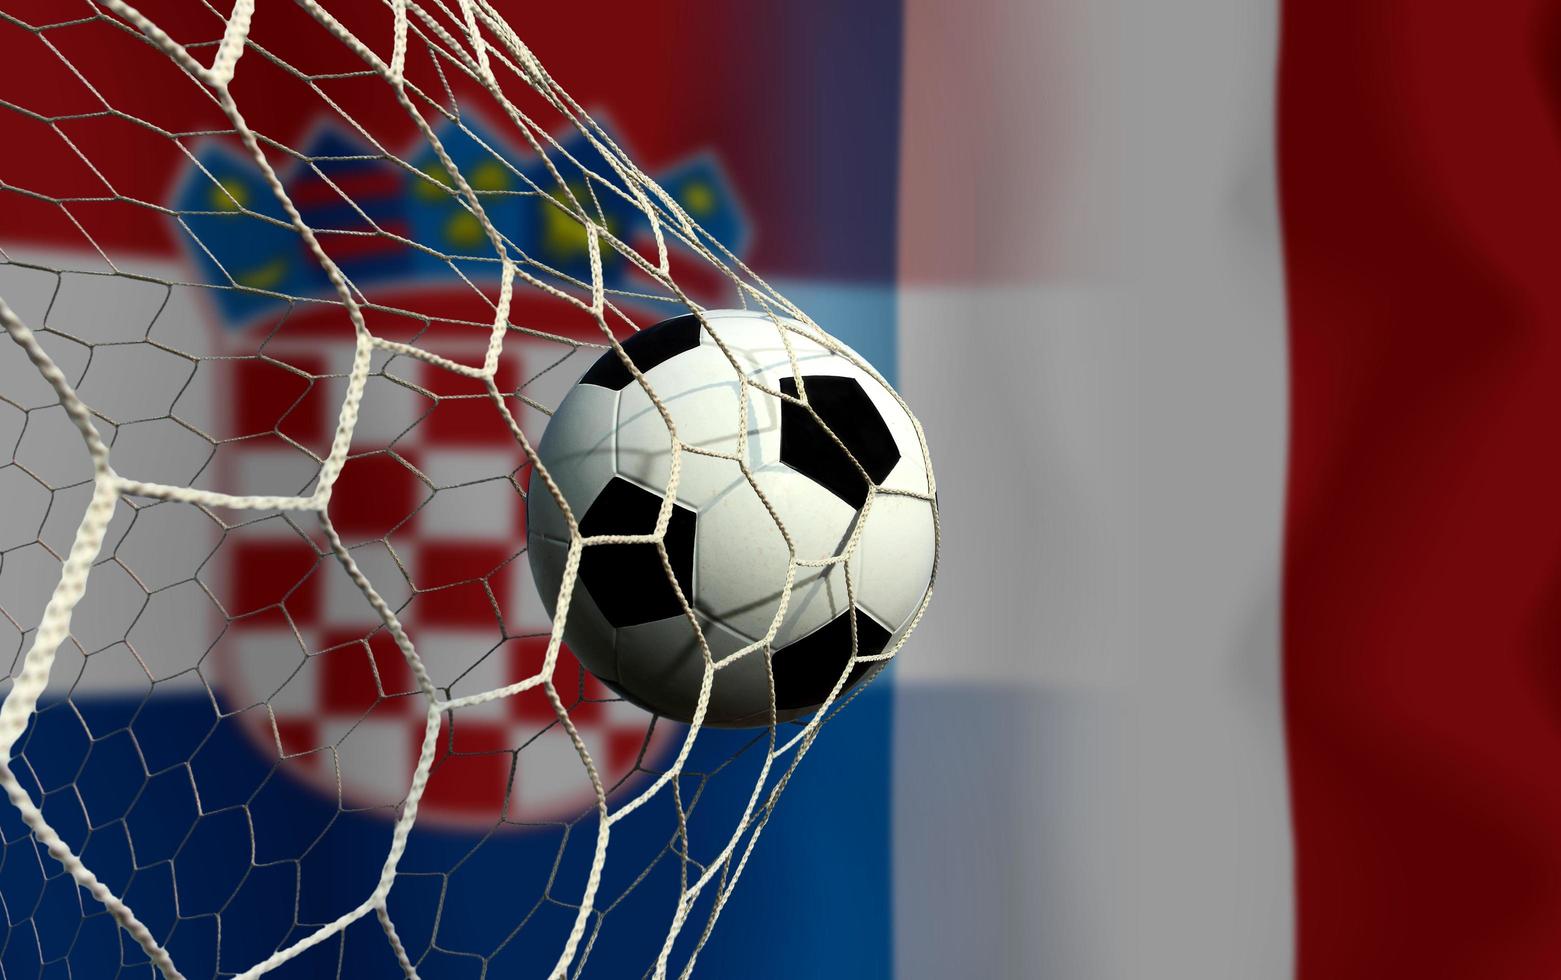 fußballpokalwettbewerb zwischen dem nationalen kroatien und dem nationalen frankreich. foto